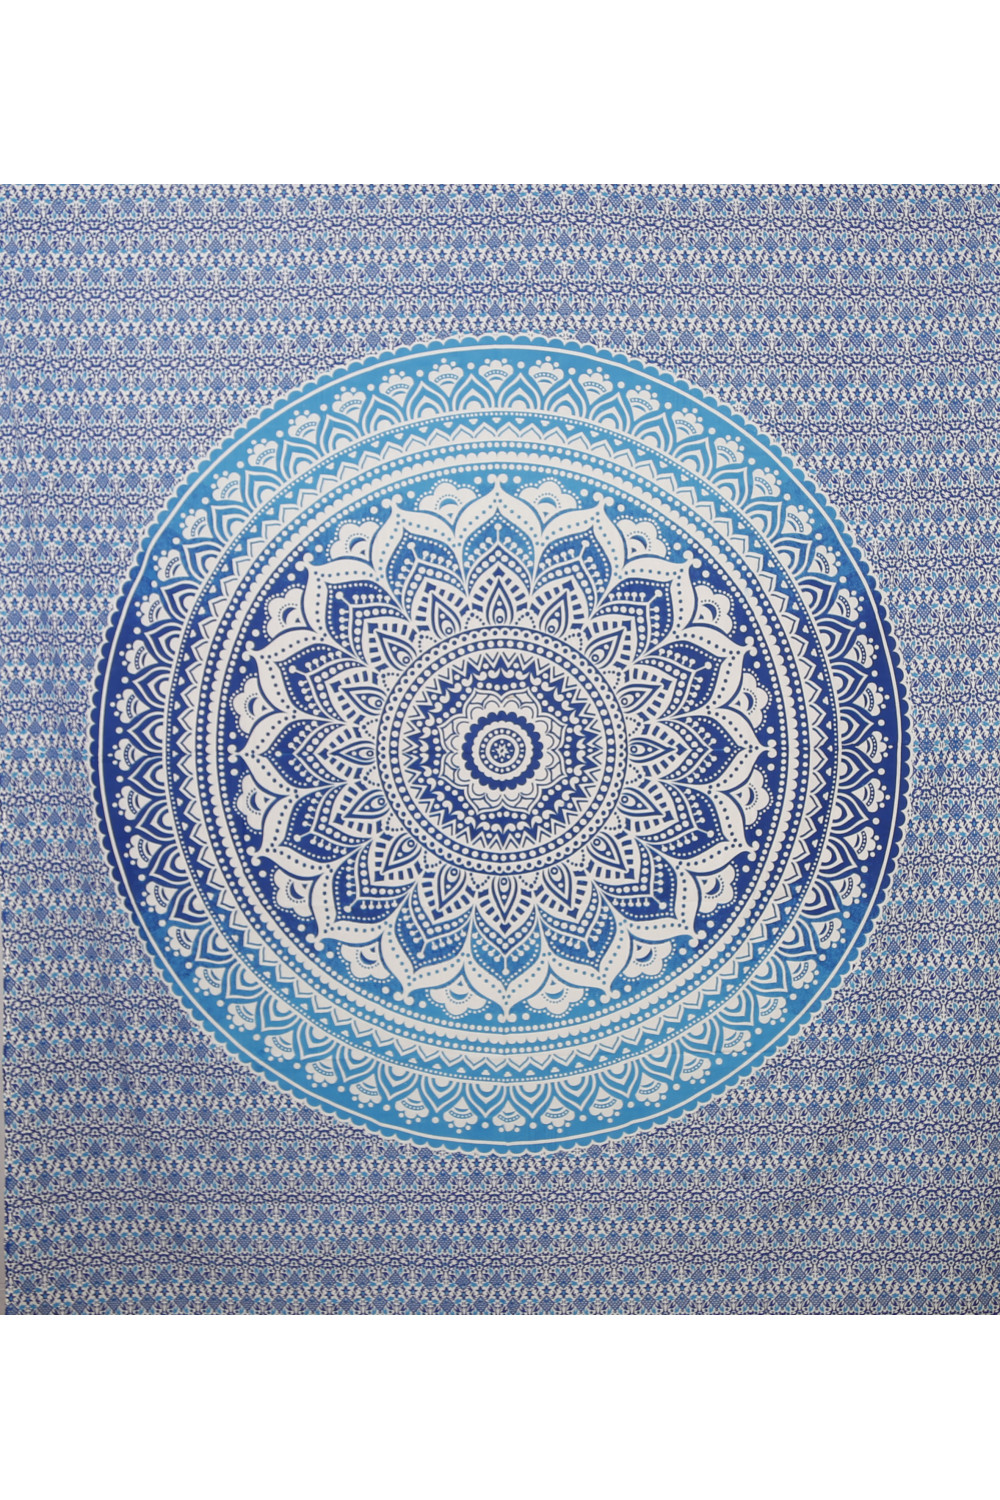 Zest For Life Blue Mandala Tapestry 84x95" 